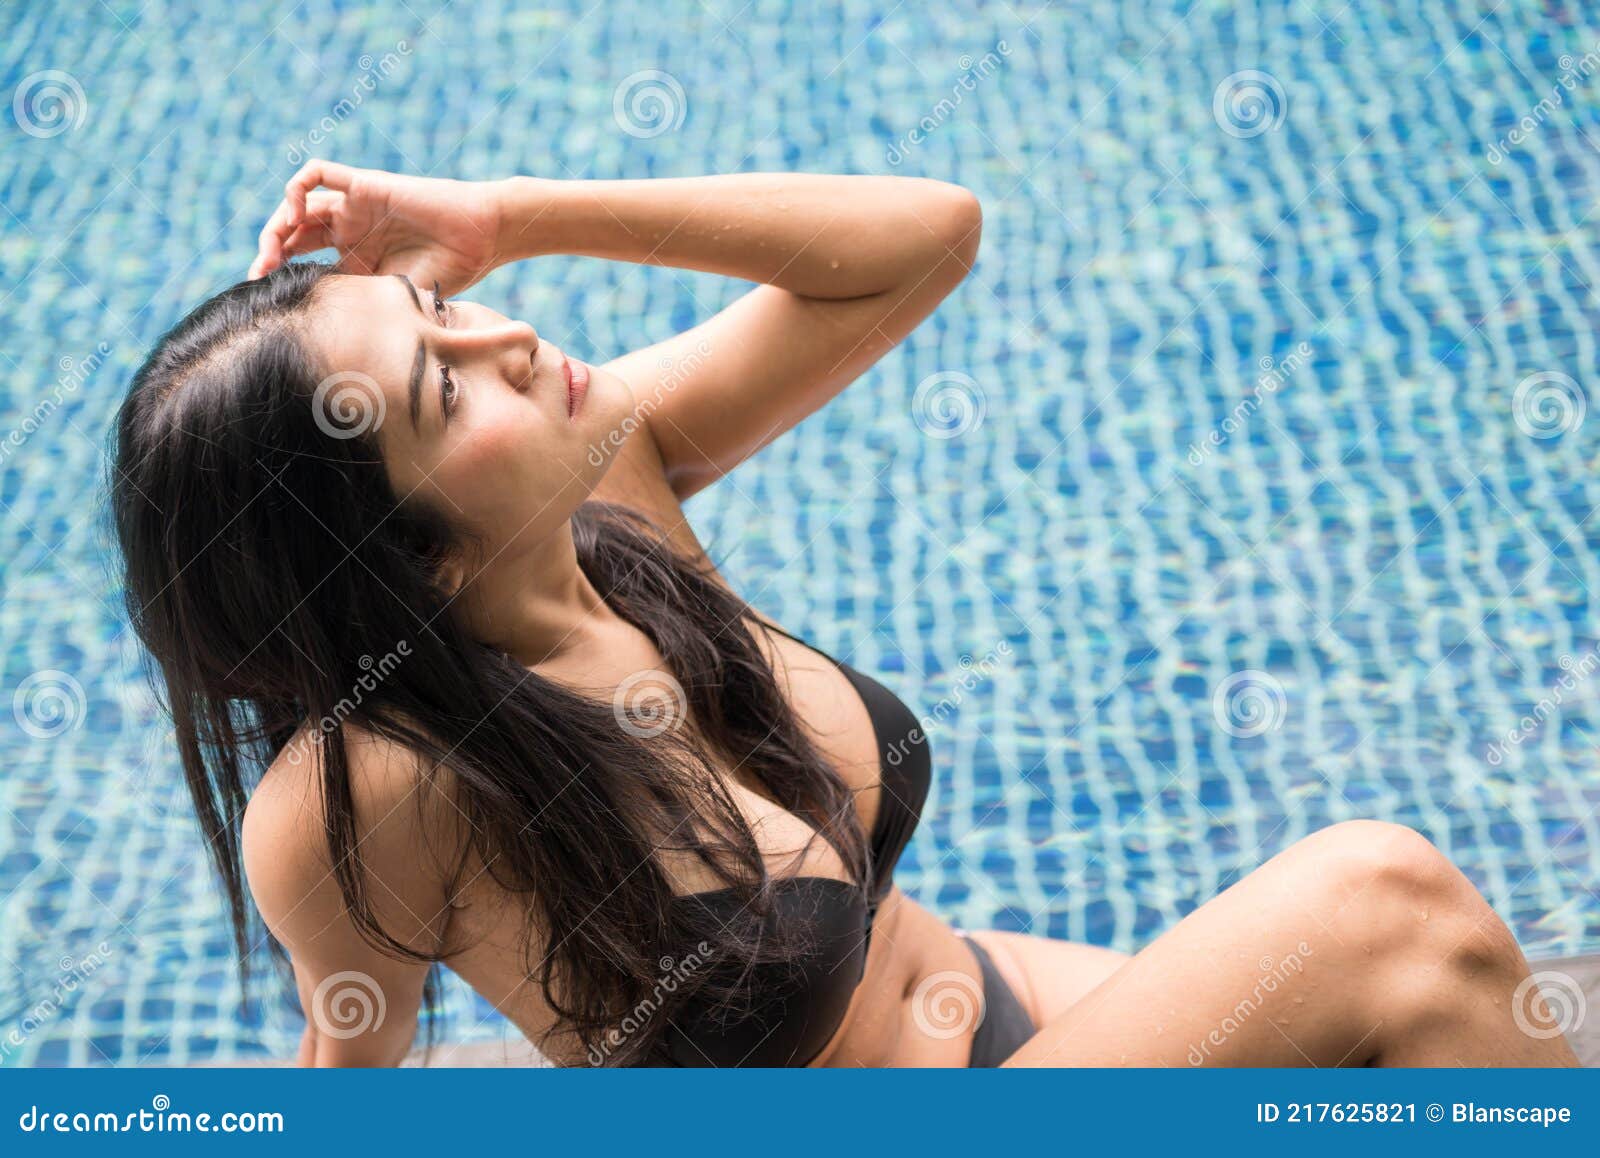 Mulher Sexy Fica Bronzeada Ao Tomar Sol Na Piscina No Verão Imagem de Stock  foto imagem